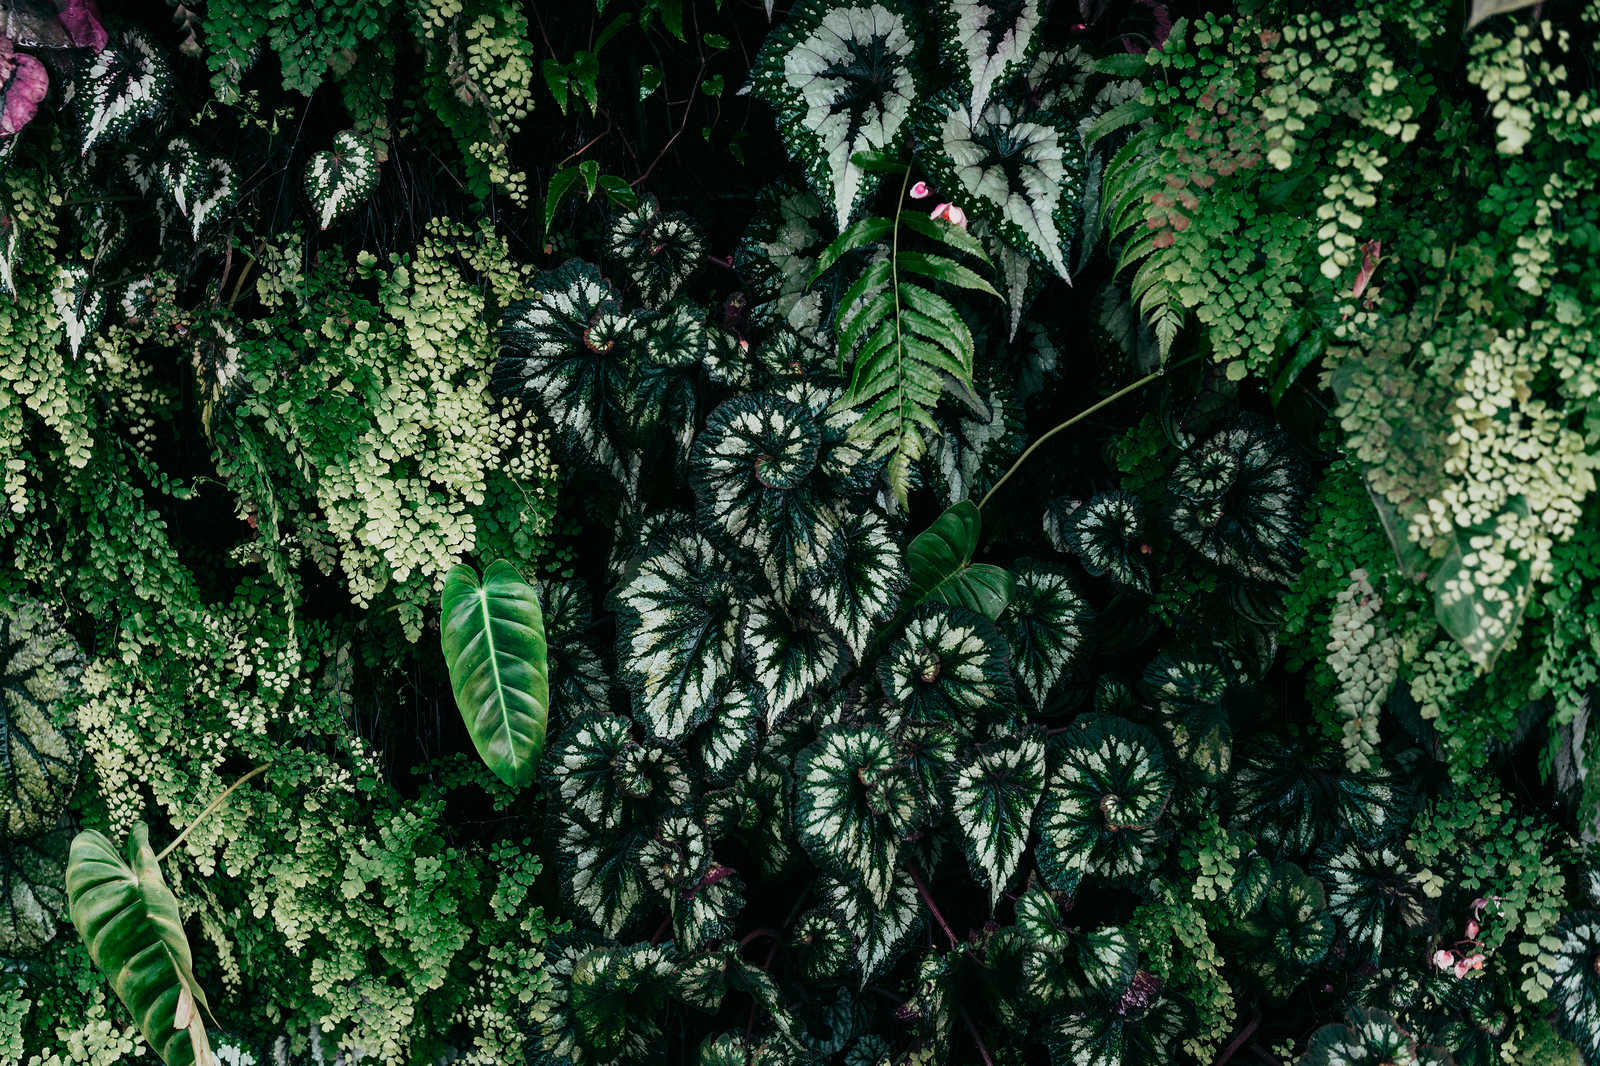             Deep Green 2 - Pintura sobre lienzo Matorral de follaje, helechos y plantas colgantes - 1,20 m x 0,80 m
        